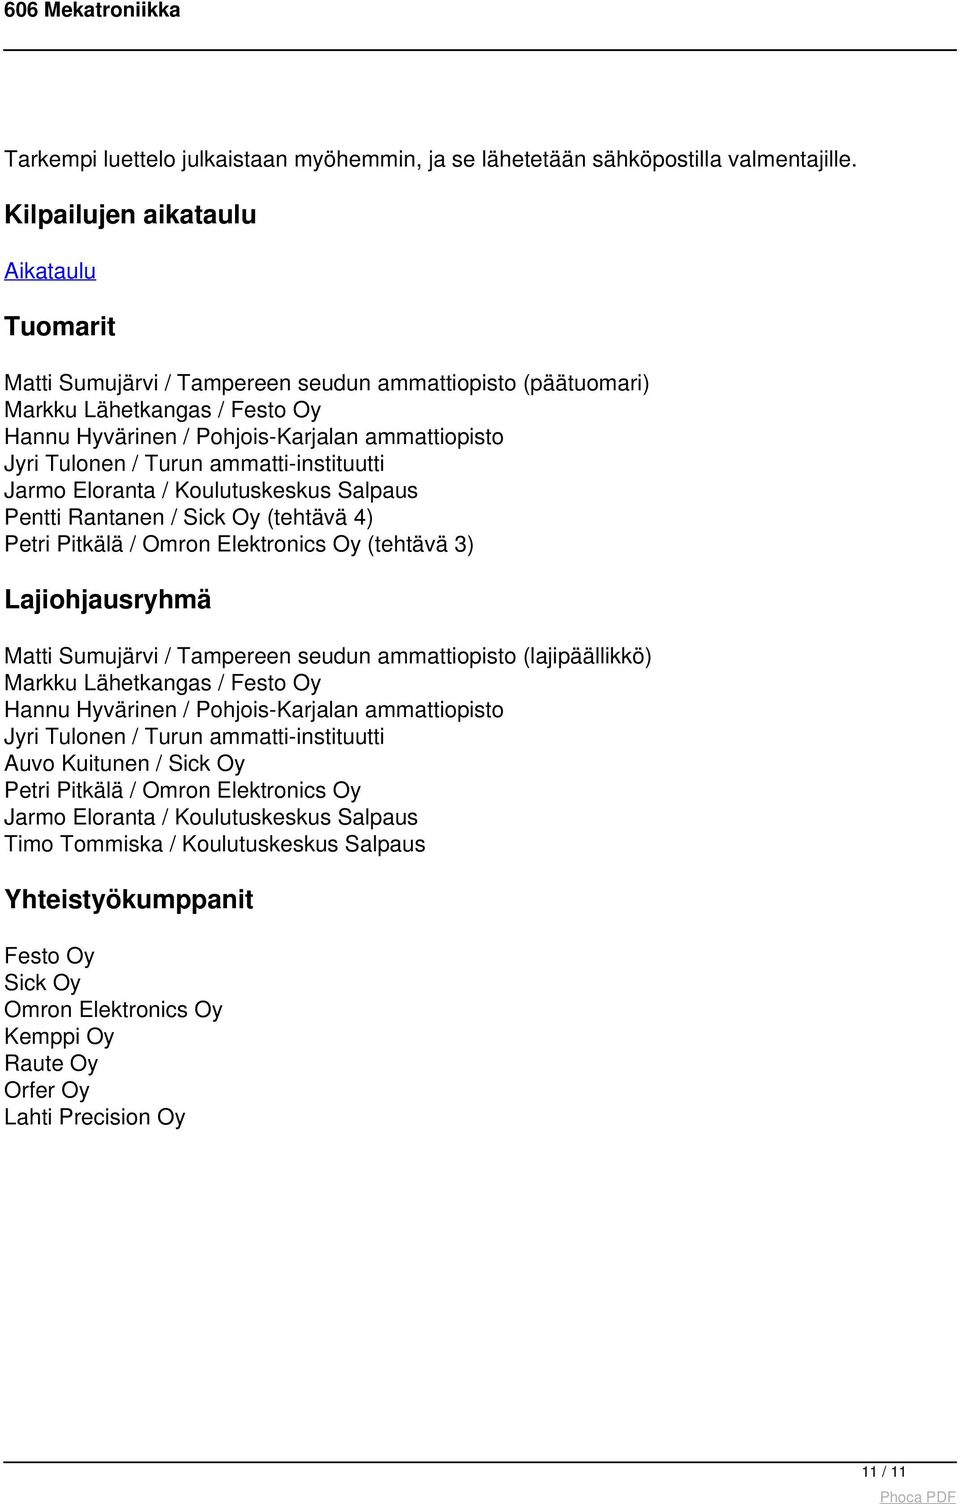 Jarmo Eloranta / Koulutuskeskus Salpaus Pentti Rantanen / Sick Oy (tehtävä 4) Petri Pitkälä / Omron Elektronics Oy (tehtävä 3) Lajiohjausryhmä Matti Sumujärvi / Tampereen seudun (lajipäällikkö)